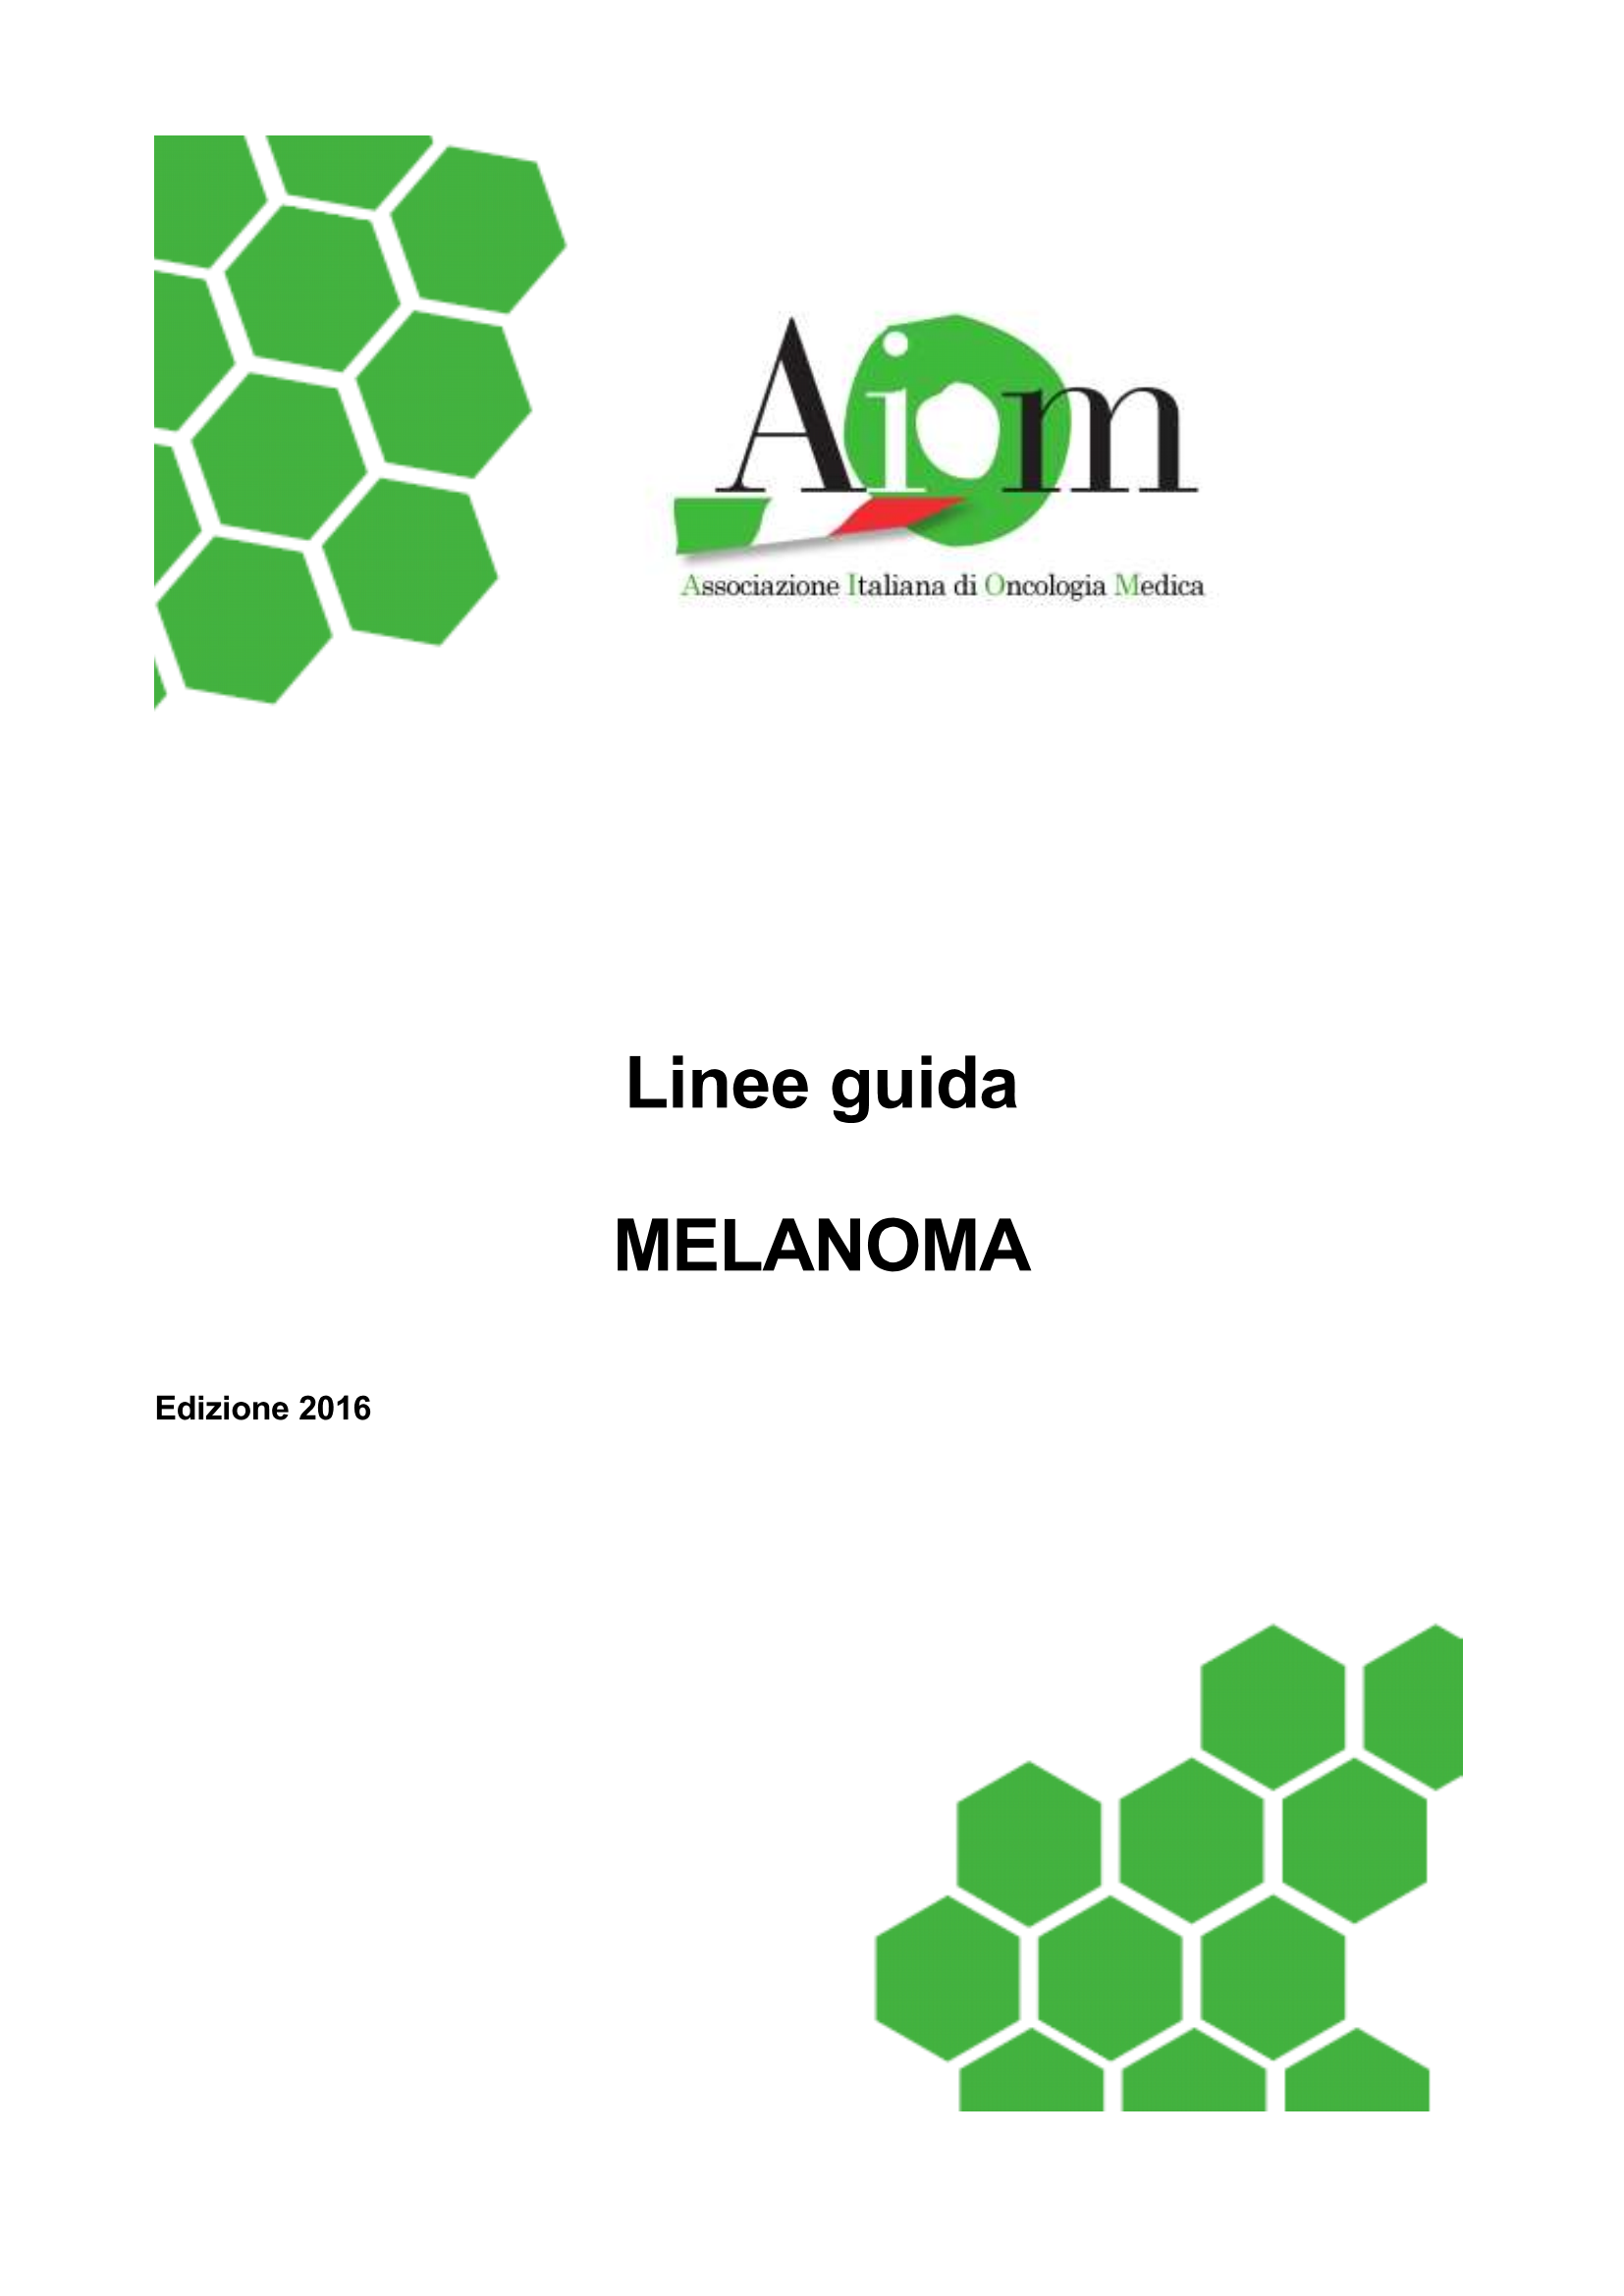 2016 LG AIOM Melanoma Page 1